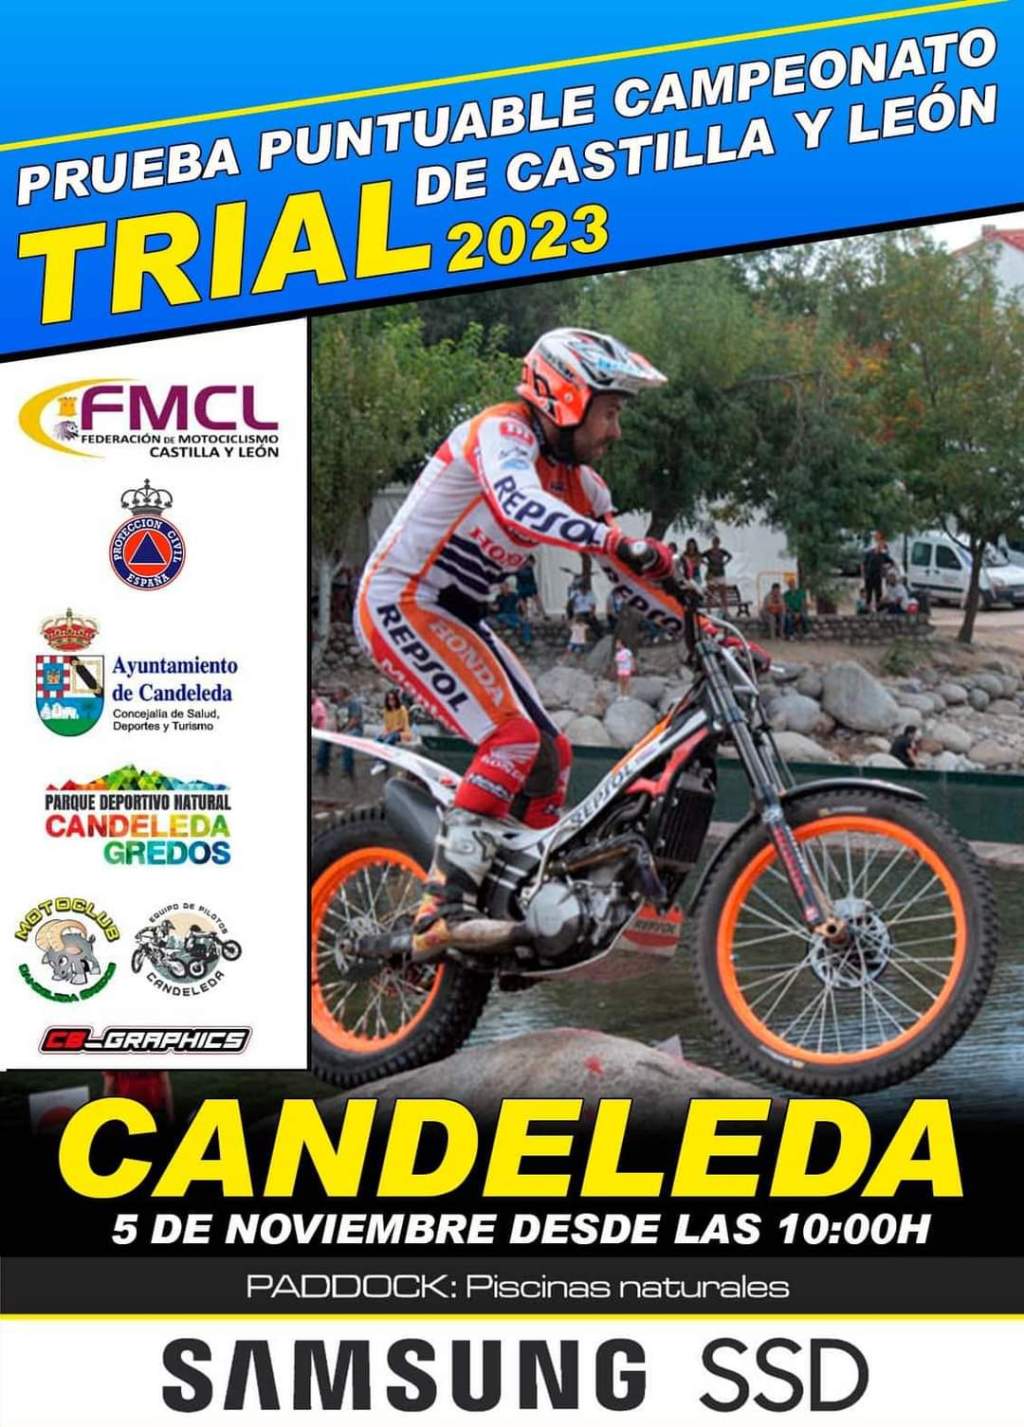 Prueba puntuable para el Campeonato de Trial 2023 de Castilla y León en Candeleda